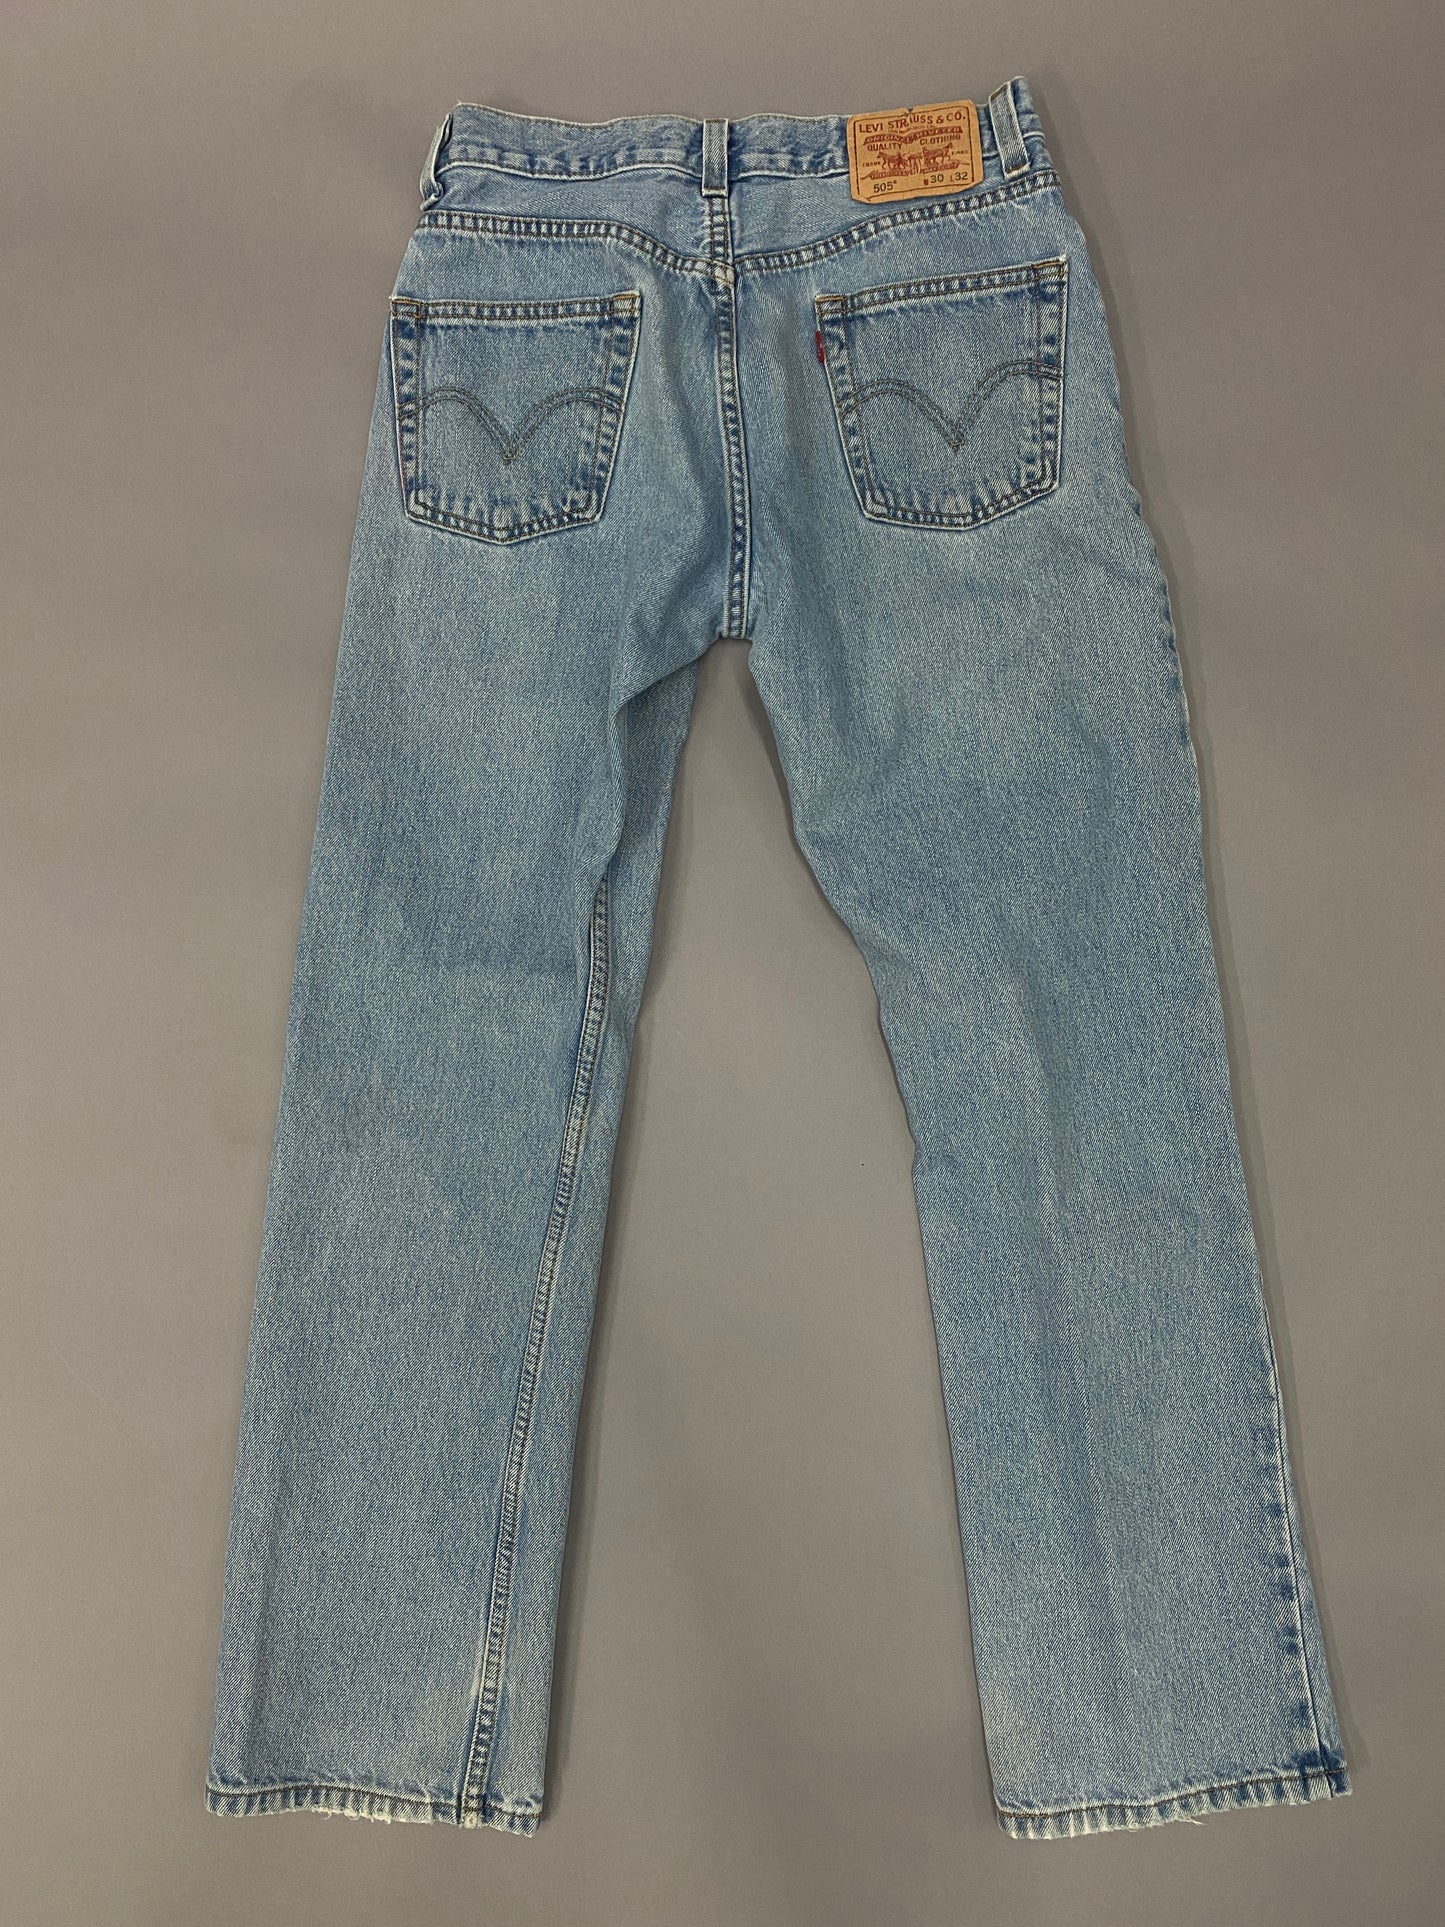 Jeans Levi's 505 - 30 x 32